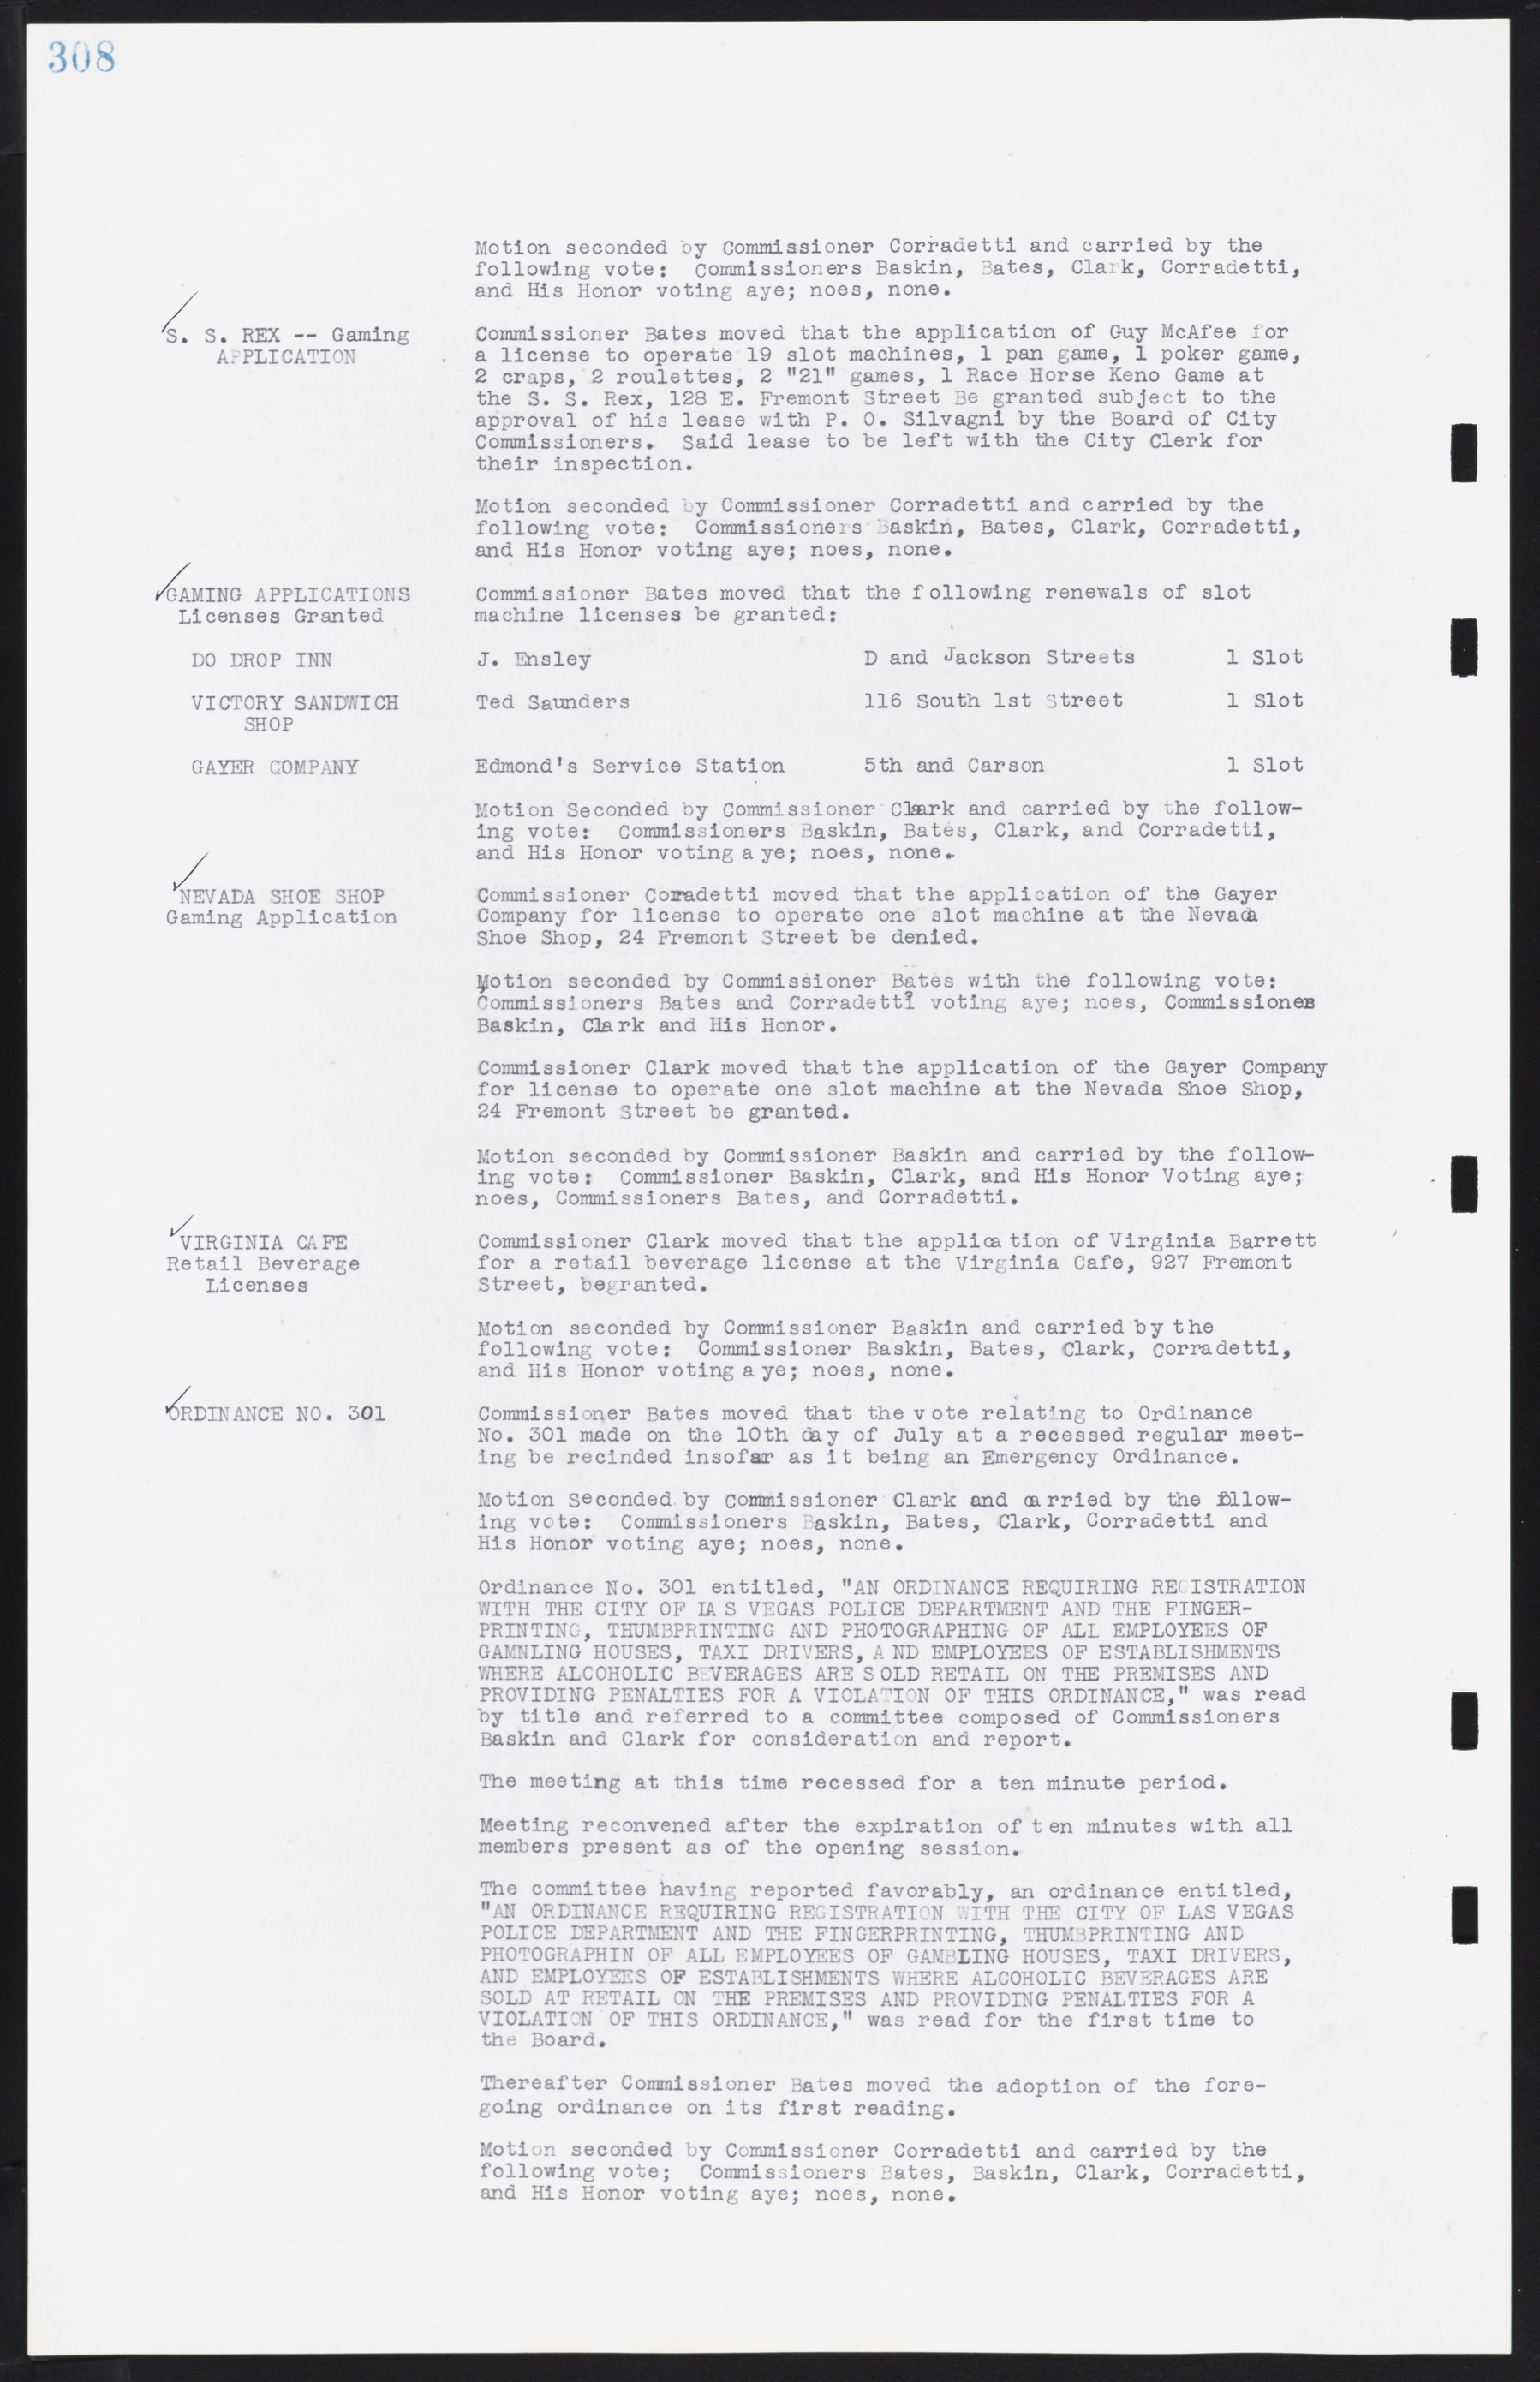 Las Vegas City Commission Minutes, August 11, 1942 to December 30, 1946, lvc000005-332